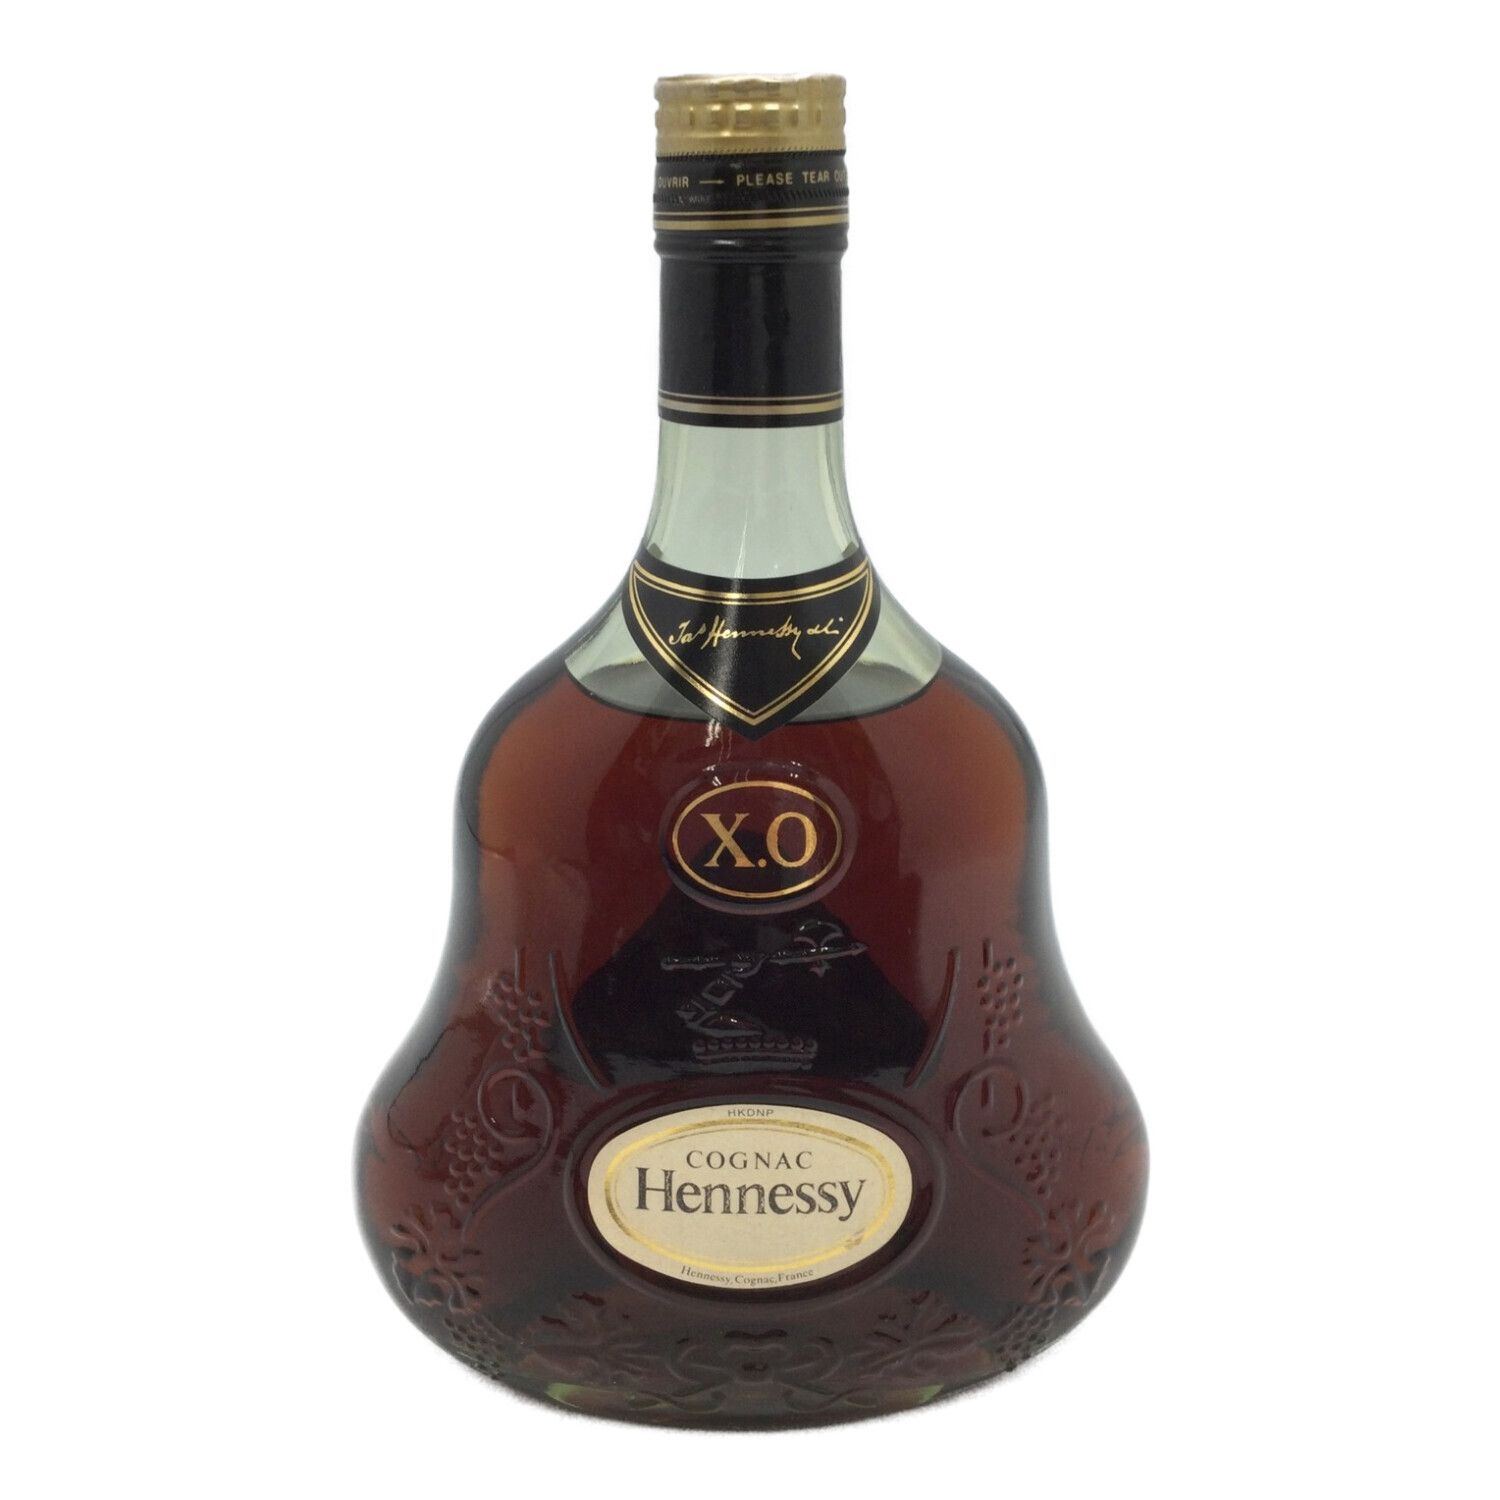 ヘネシー (Hennessy) コニャック 750ml 本体のみ XO 金キャップ XO